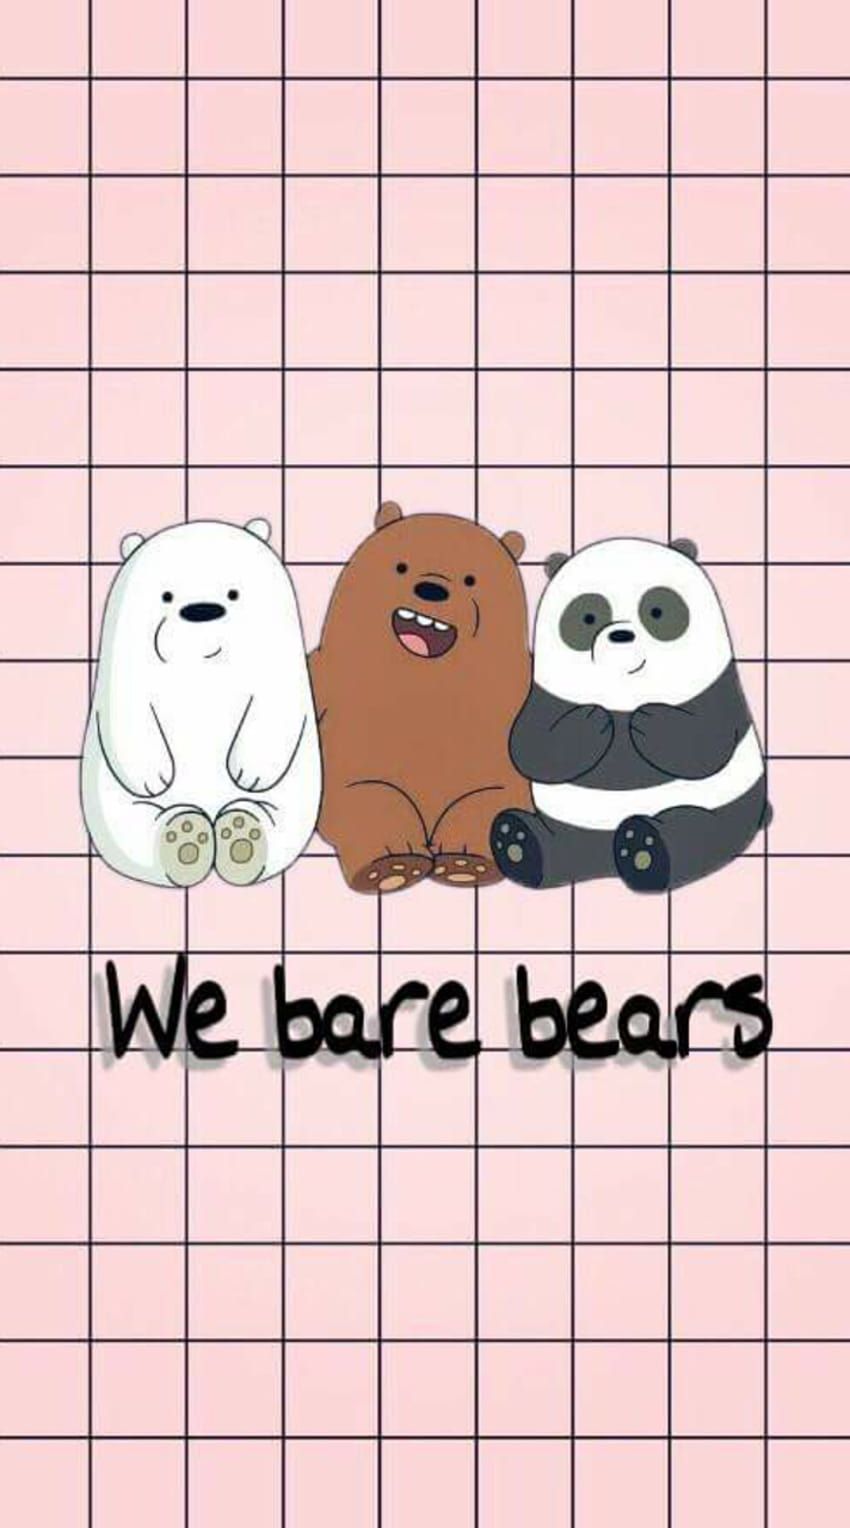 We bare bears wallpaper - We Bare Bears